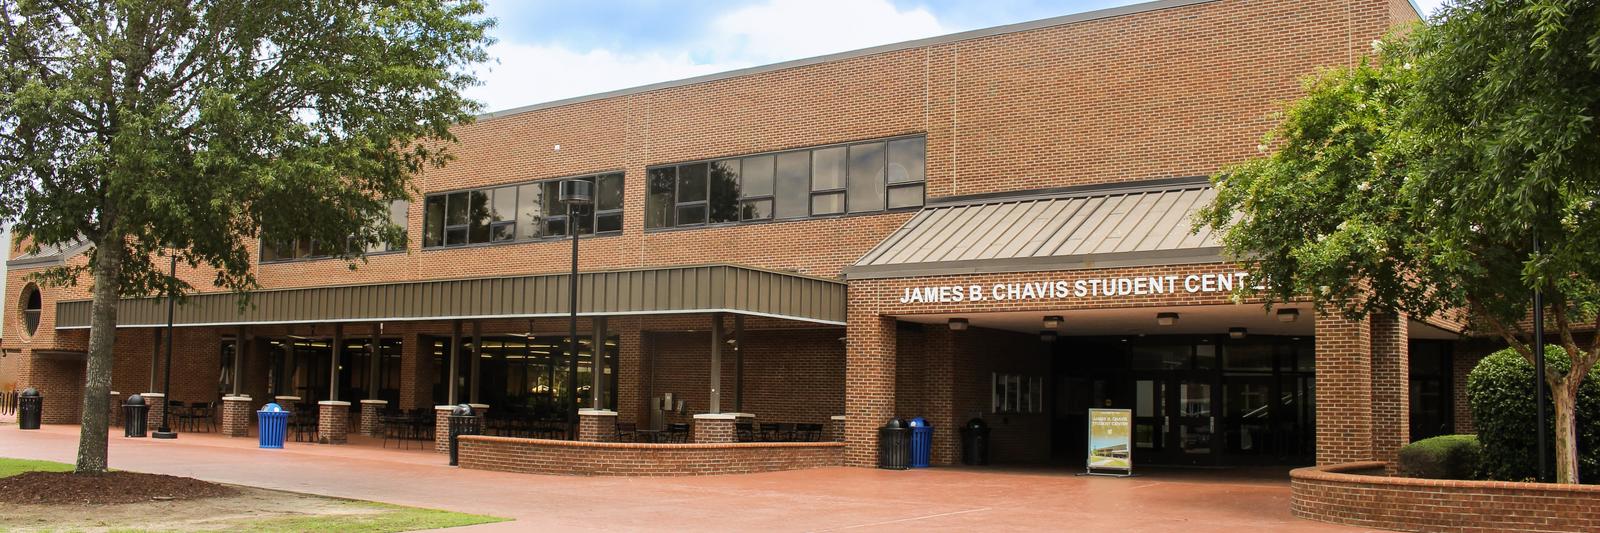 James B. Chavis Student Center